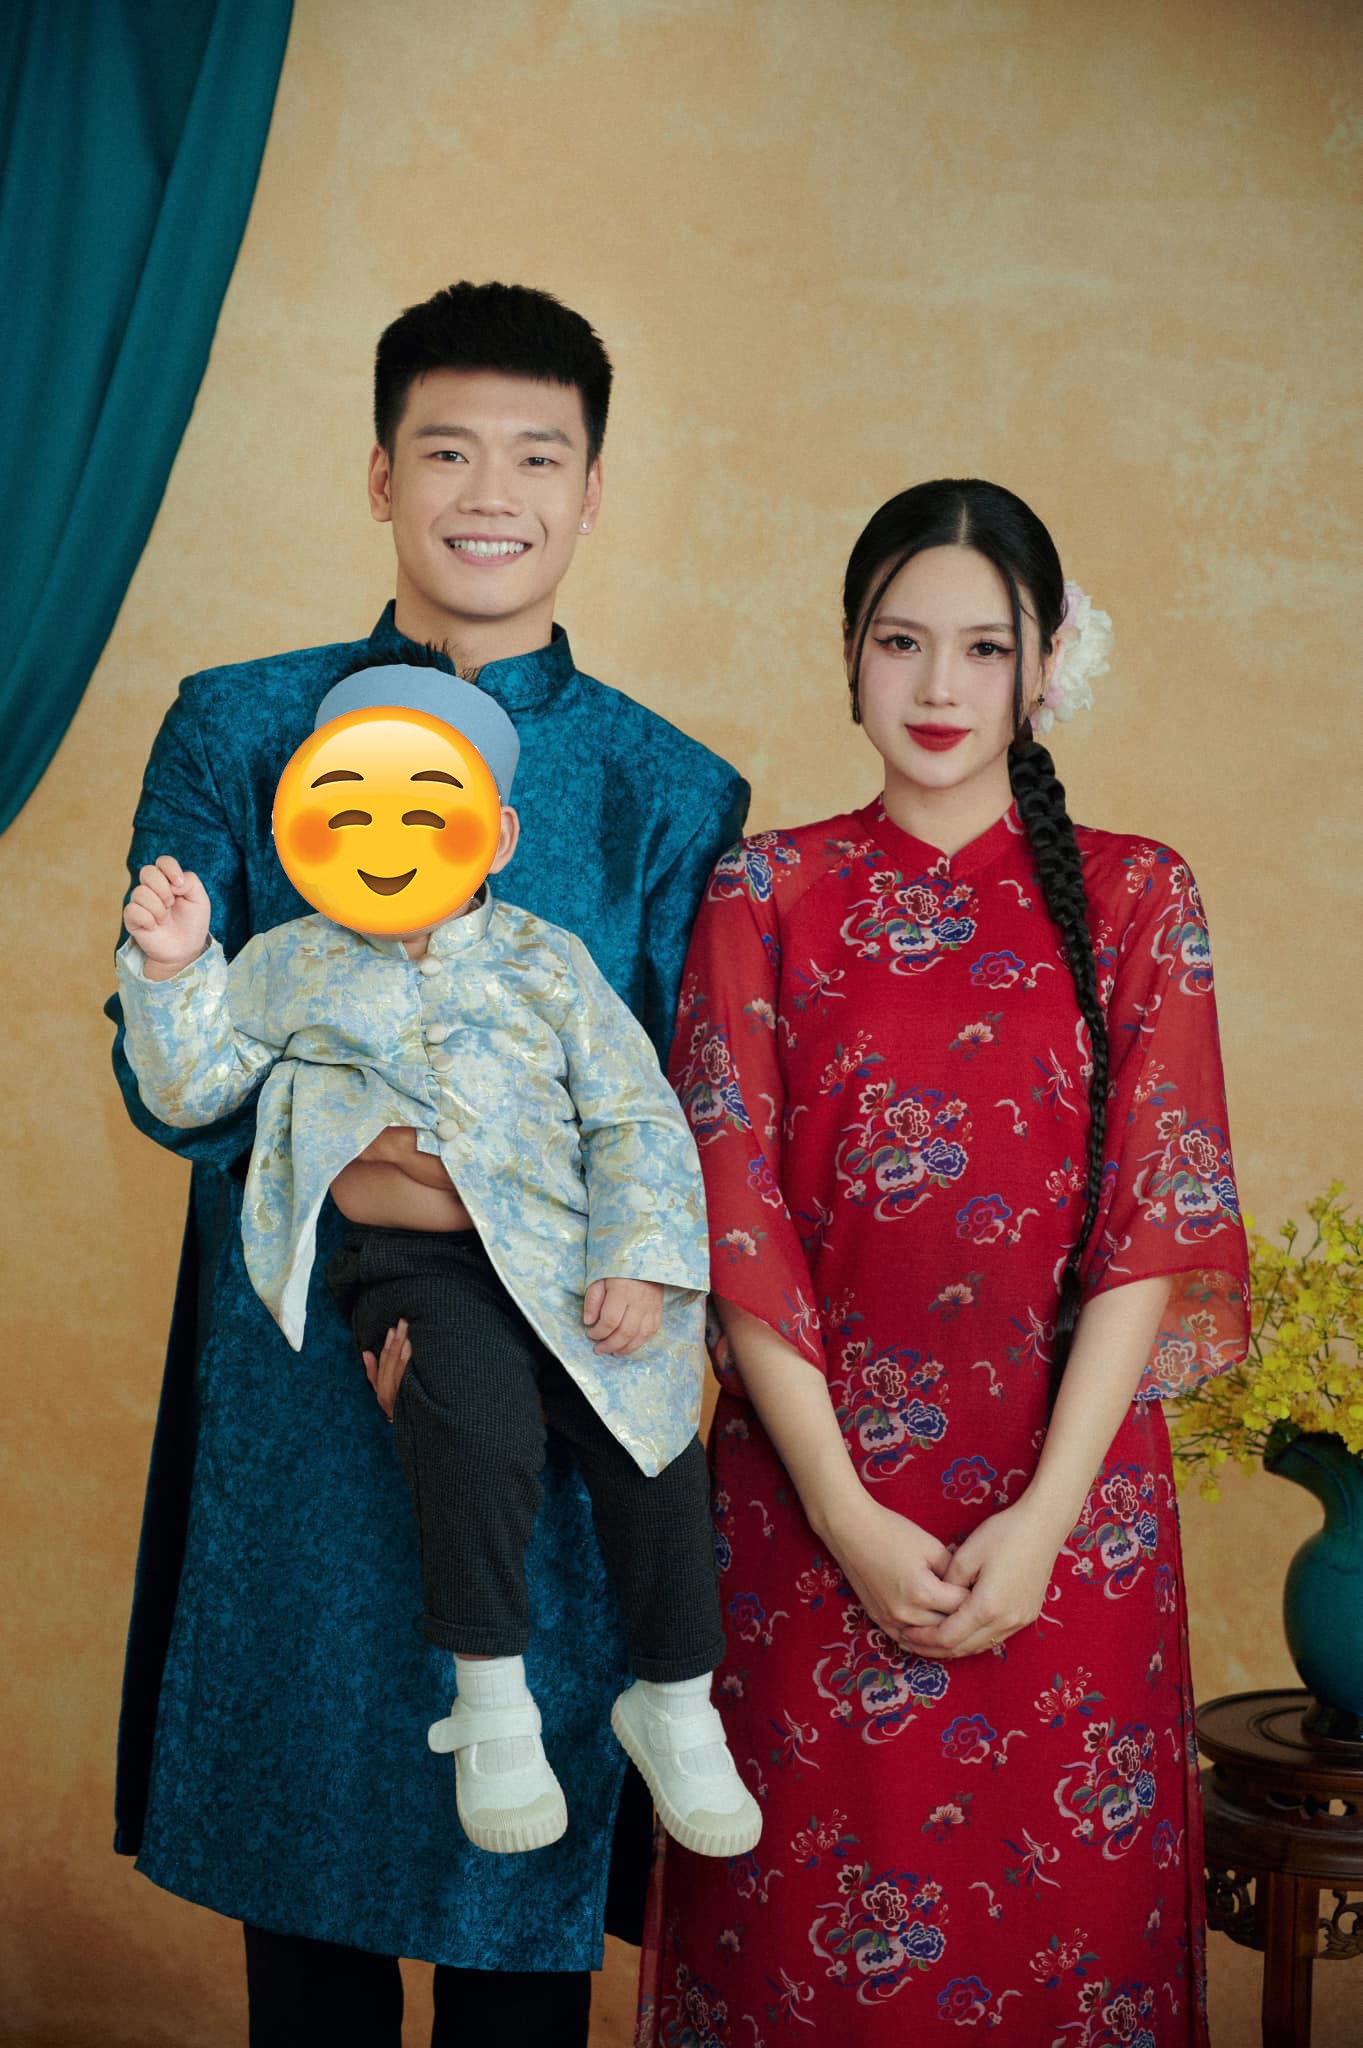 Cuộc sống của Quang Hải và các cầu thủ sau khi lấy vợ hot girl - 12